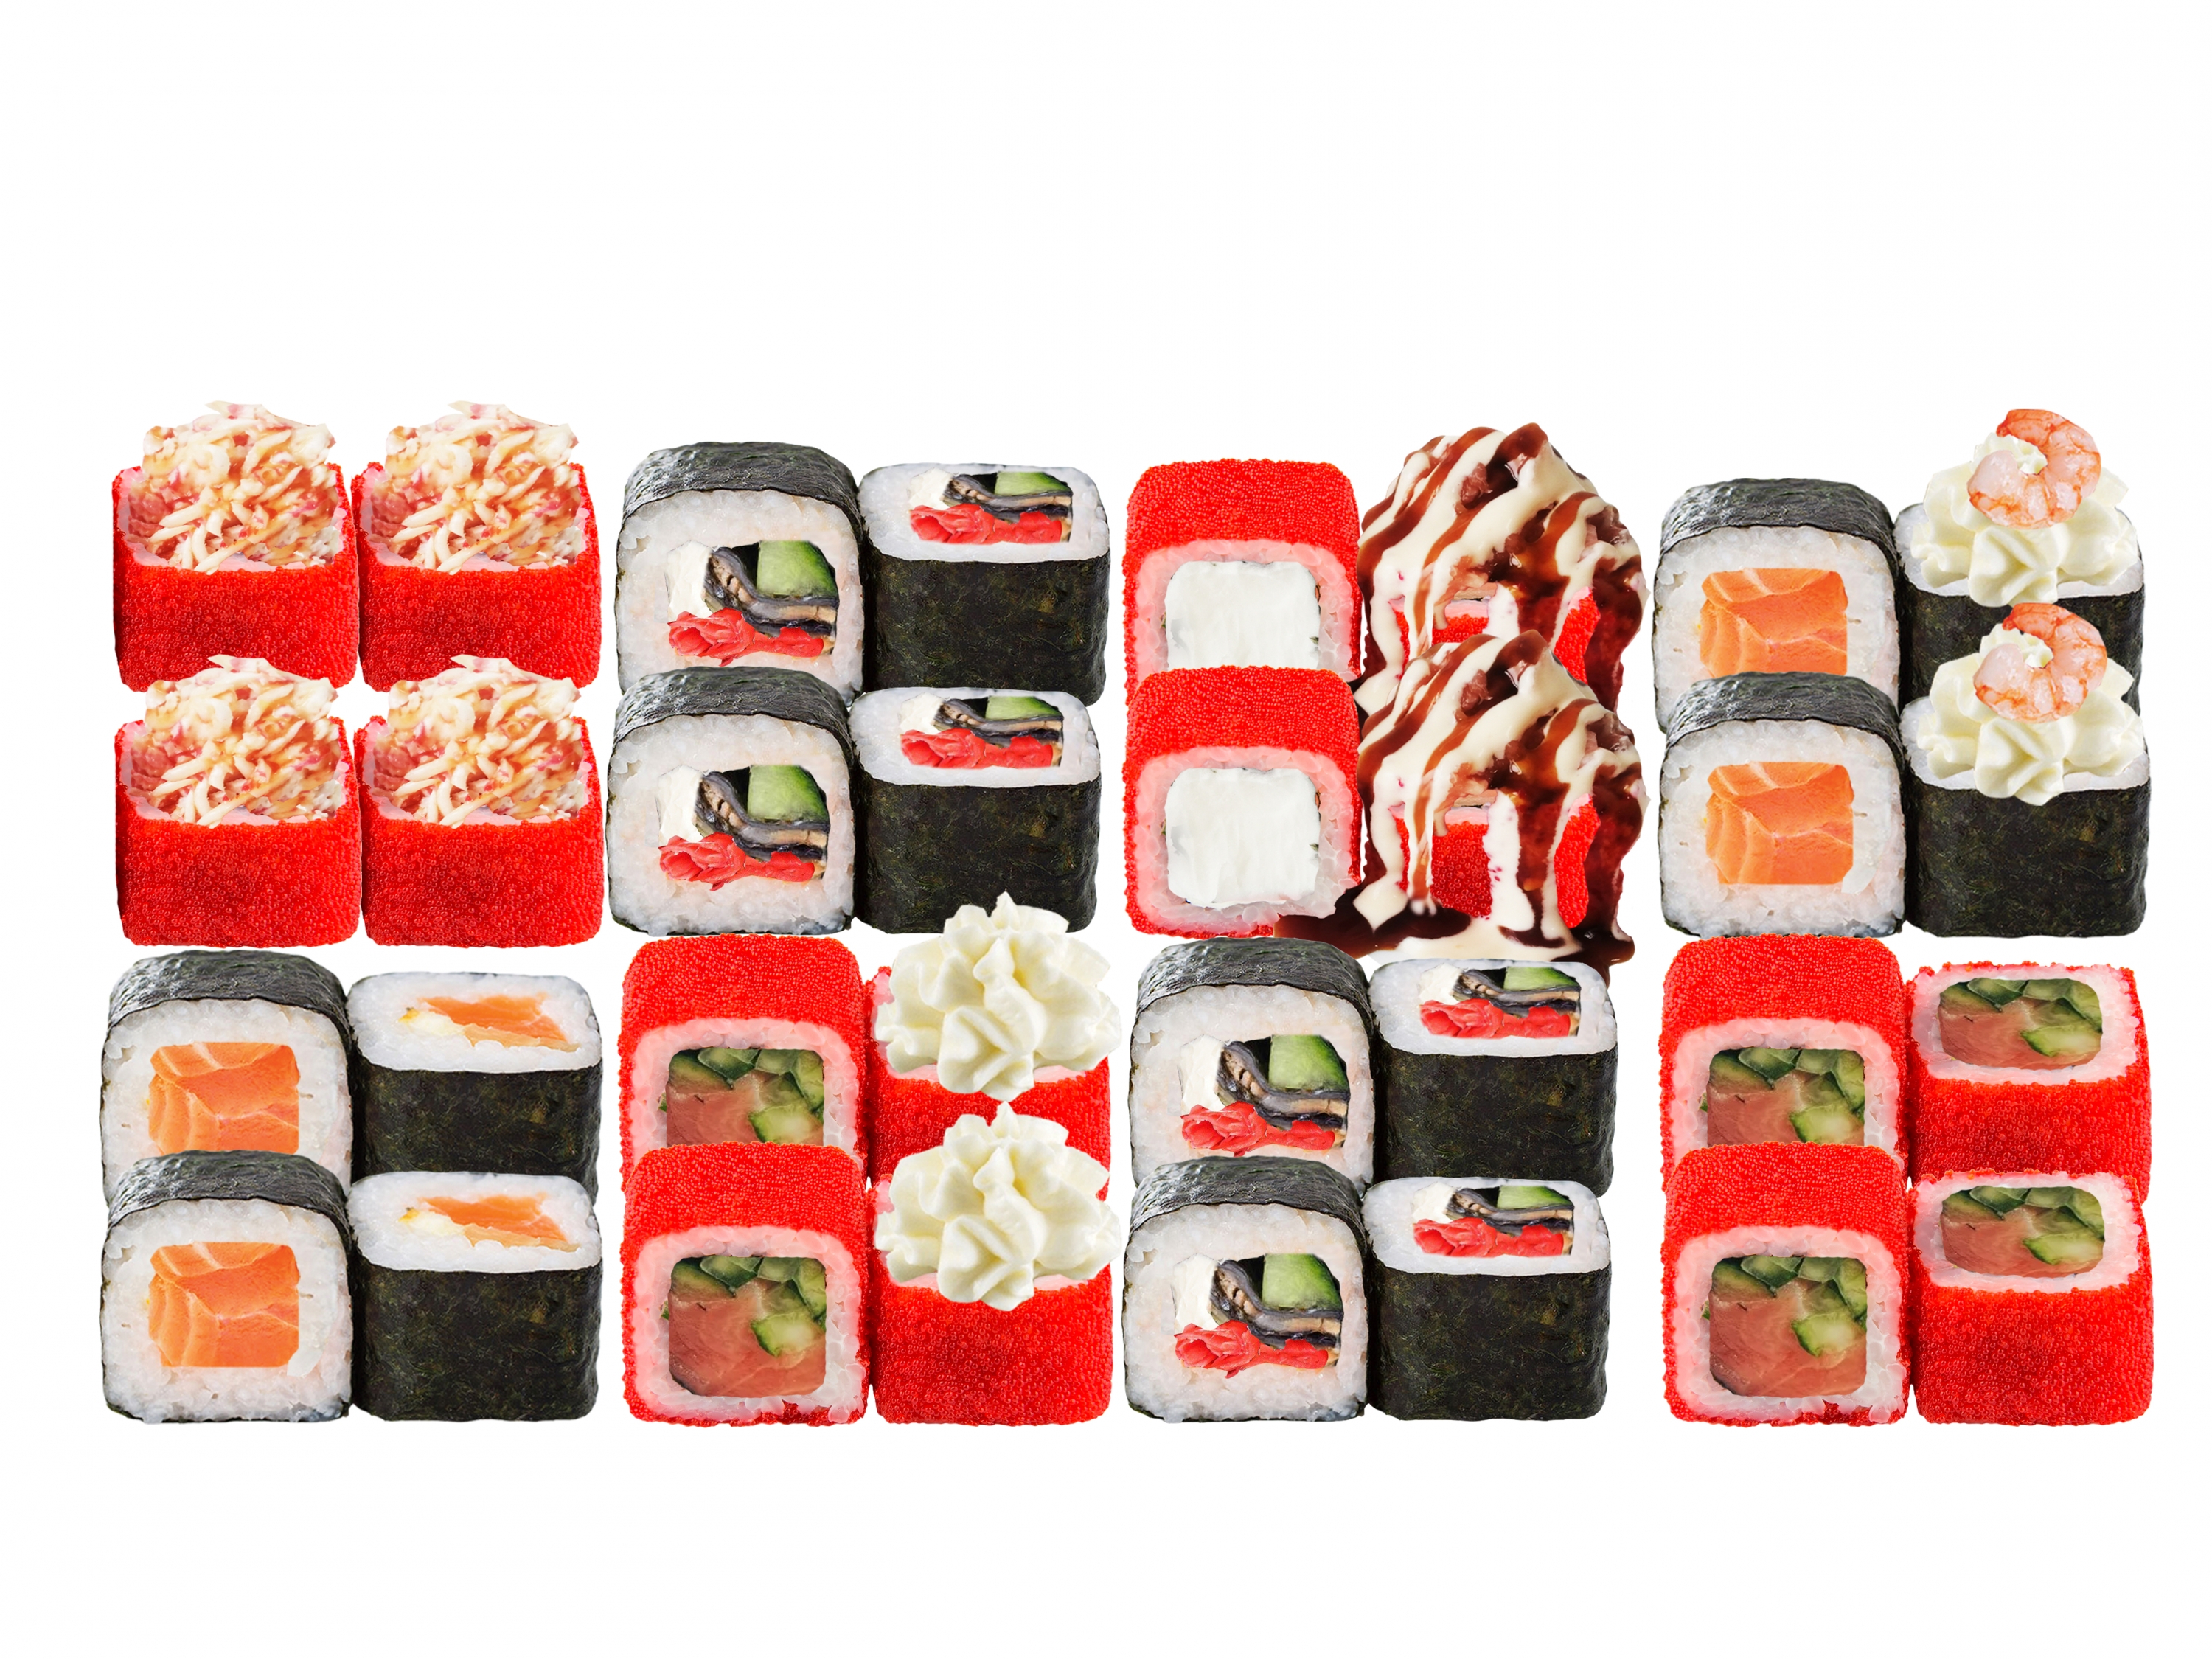 Заказать суши недорого в омске бесплатная доставка фото 104